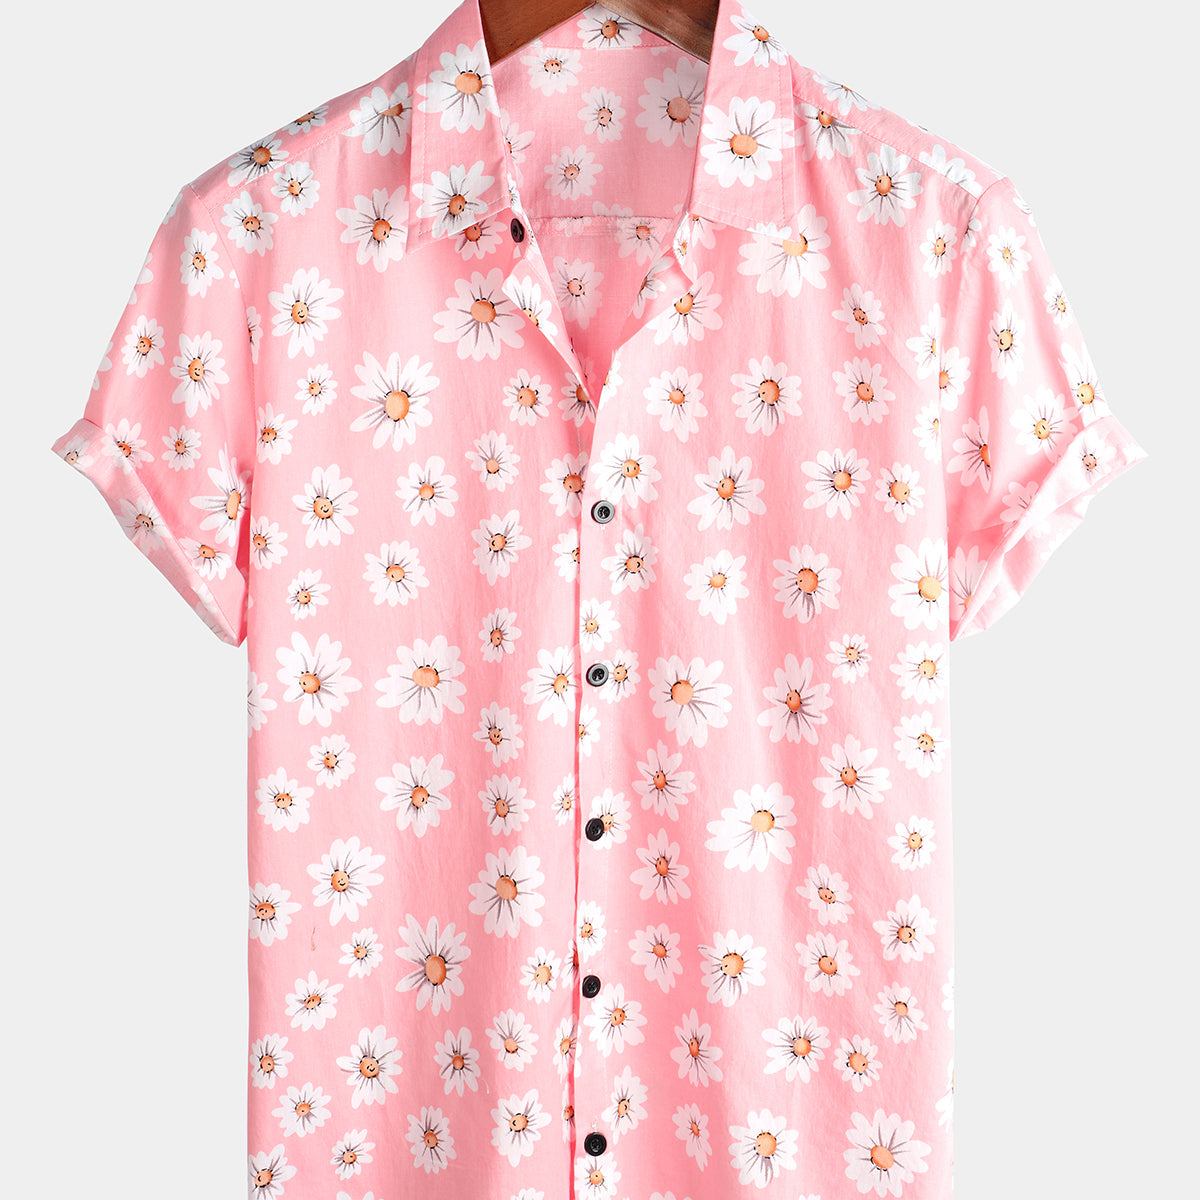 Herren Kurzärmliges Sommerhemd mit Gänseblümchen Blumenmuster